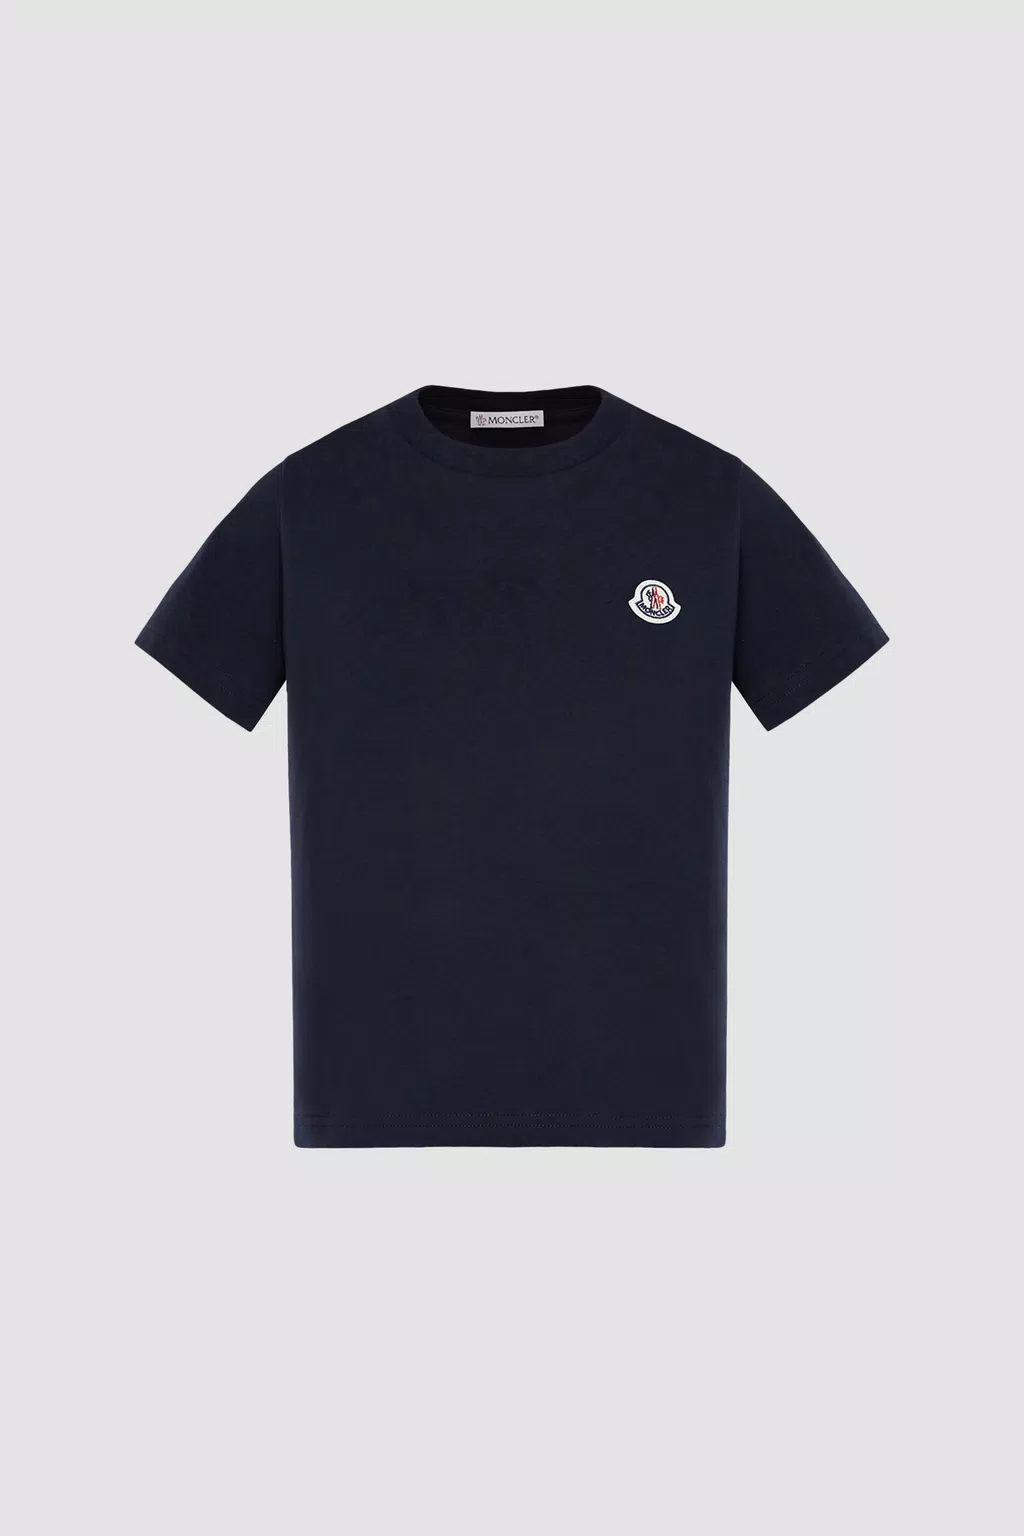 T-Shirt mit Logo Jungen Blau Moncler 1